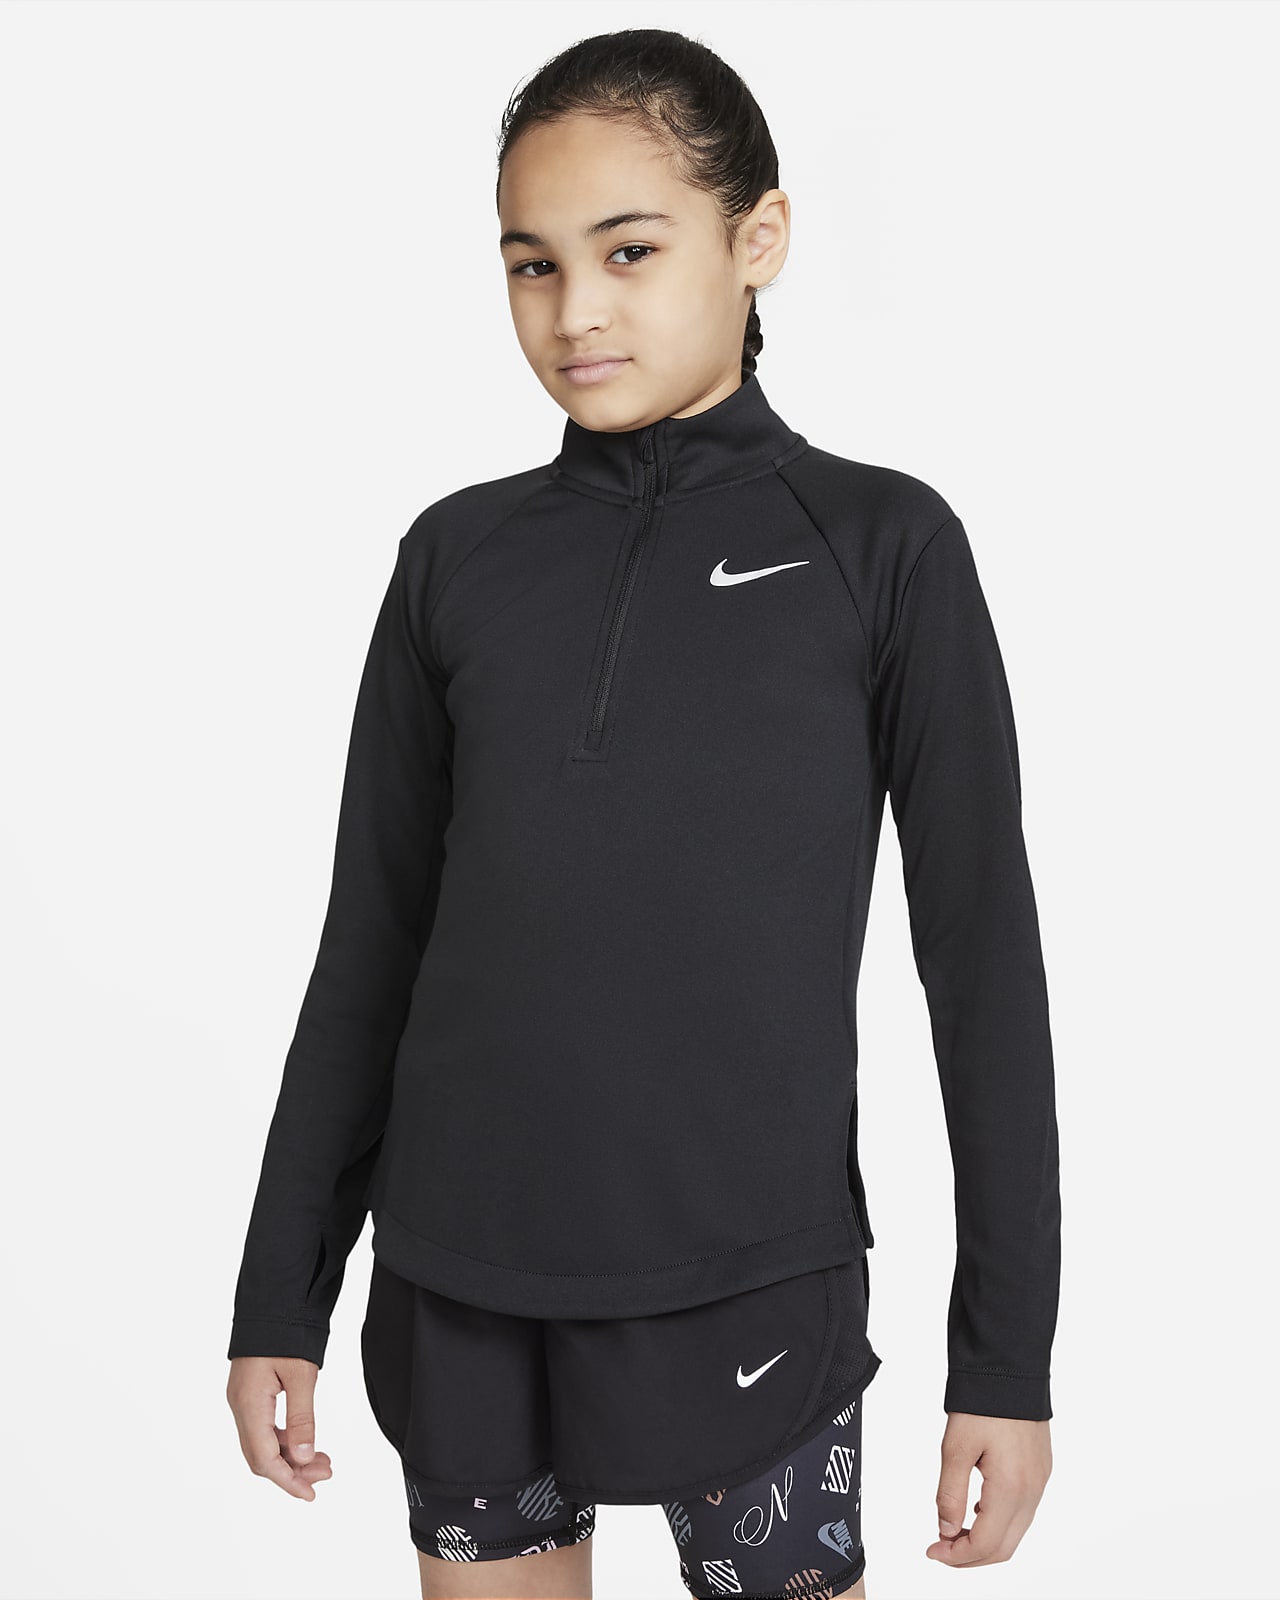 Běžecká mikina Nike Dri-FIT s dlouhým rukávem pro větší děti (dívky)